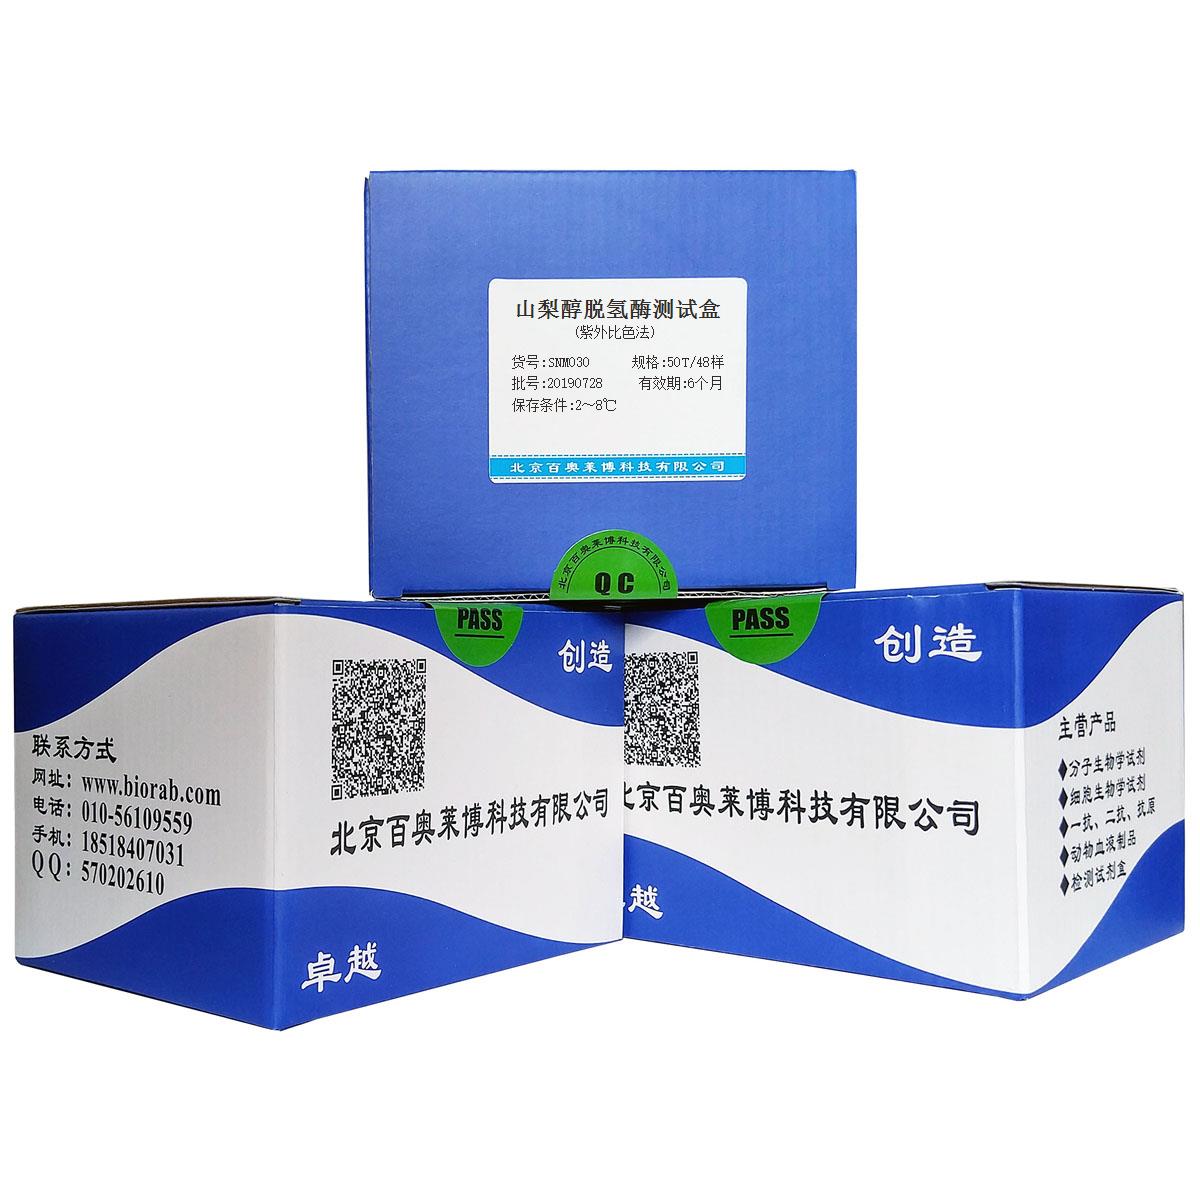 山梨醇脱氢酶测试盒(紫外比色法)北京供应商